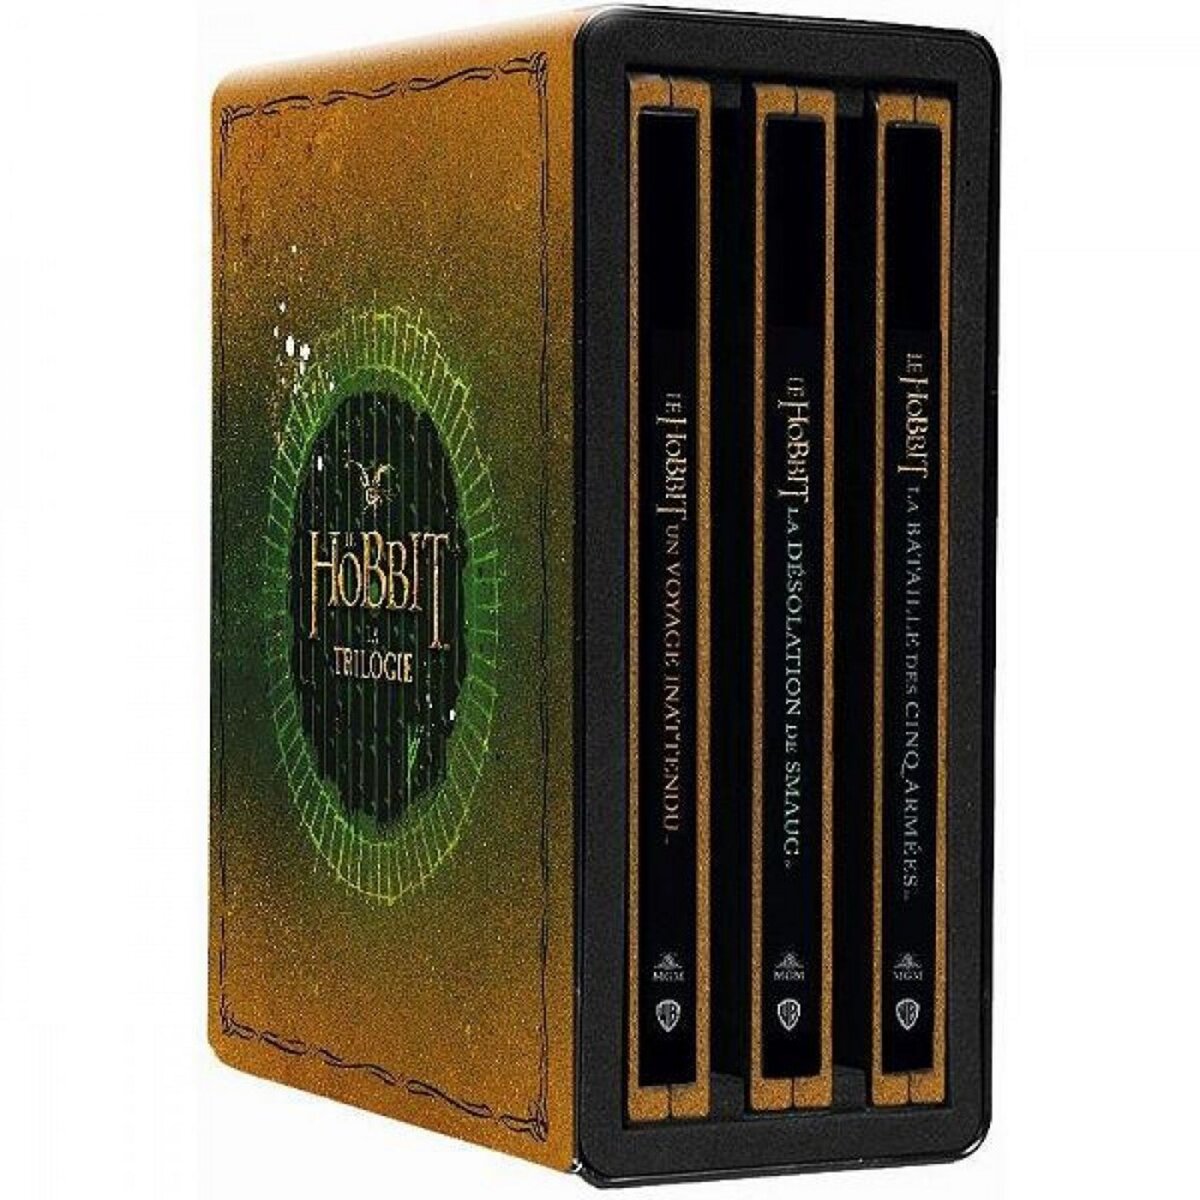 Le Hobbit Trilogie - BR4K Steelbook